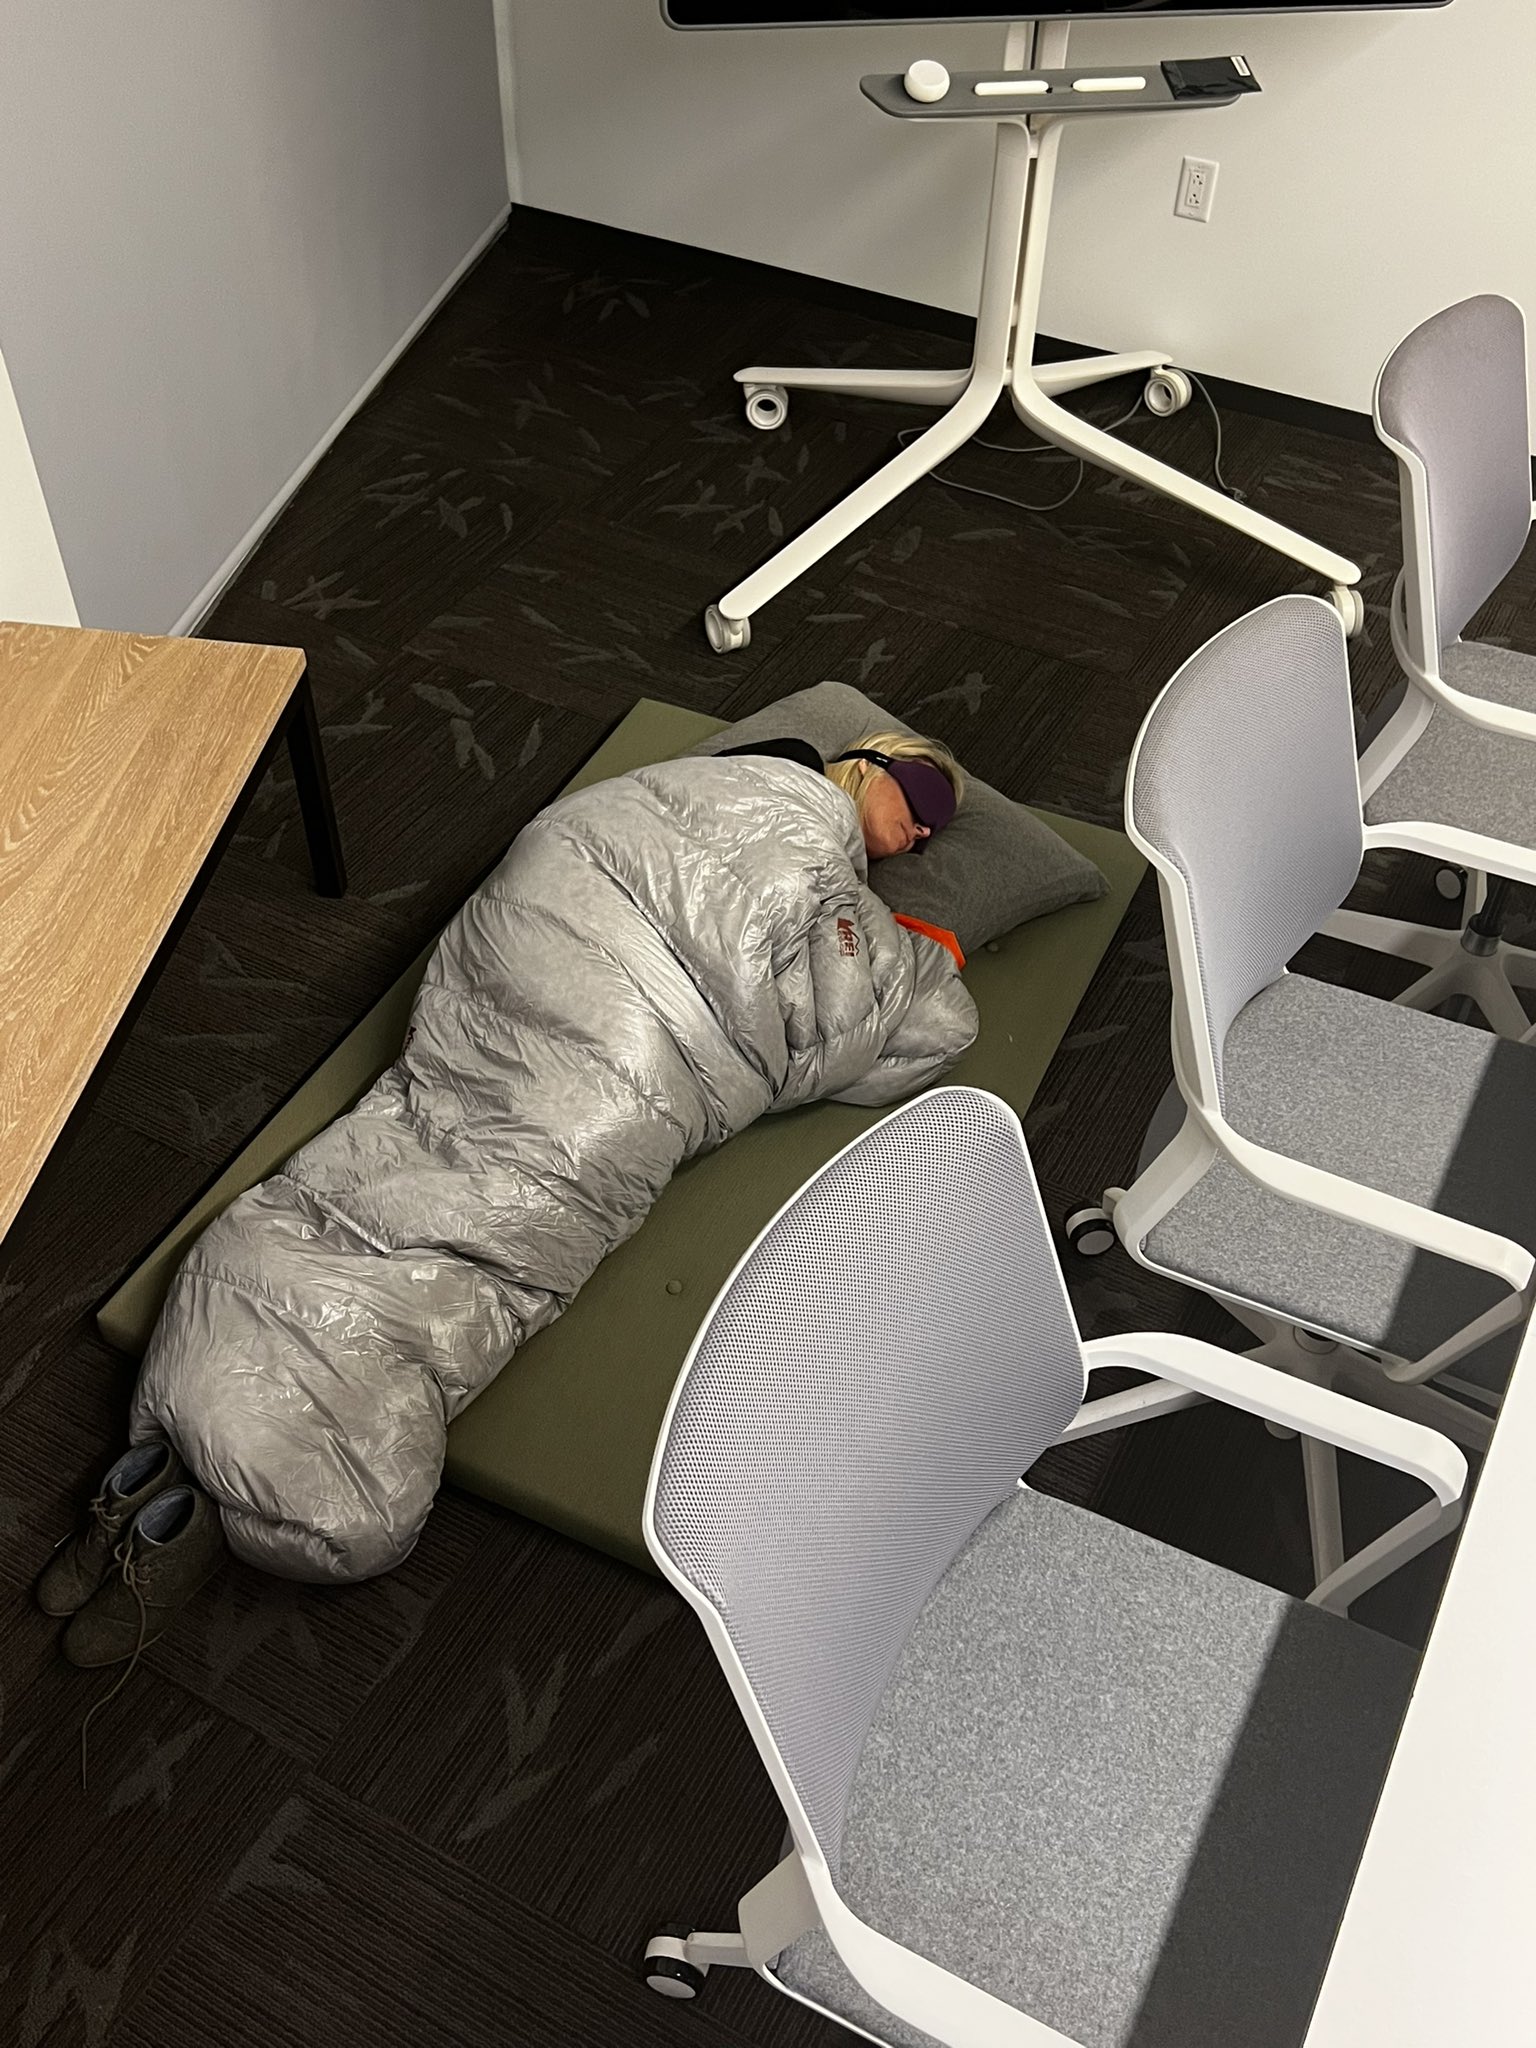 Responsable de Twitter Blue durmiendo en las oficinas de Twitter para complacer a su jefe Elon Musk antes de ser despedida